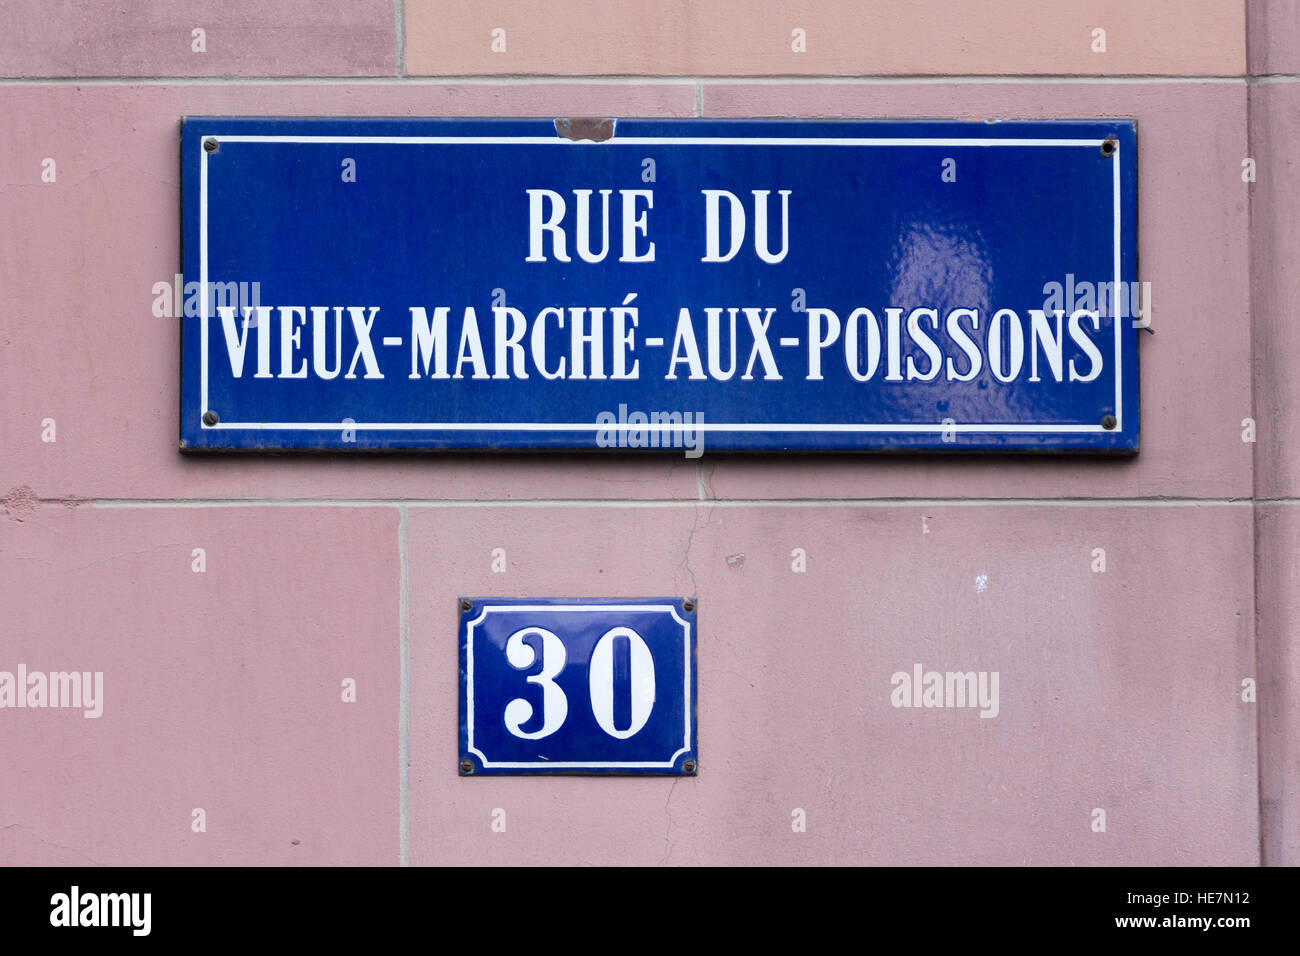 A street sign for Rue Du Vieux-Marché-Aux-Poissons Stock Photo